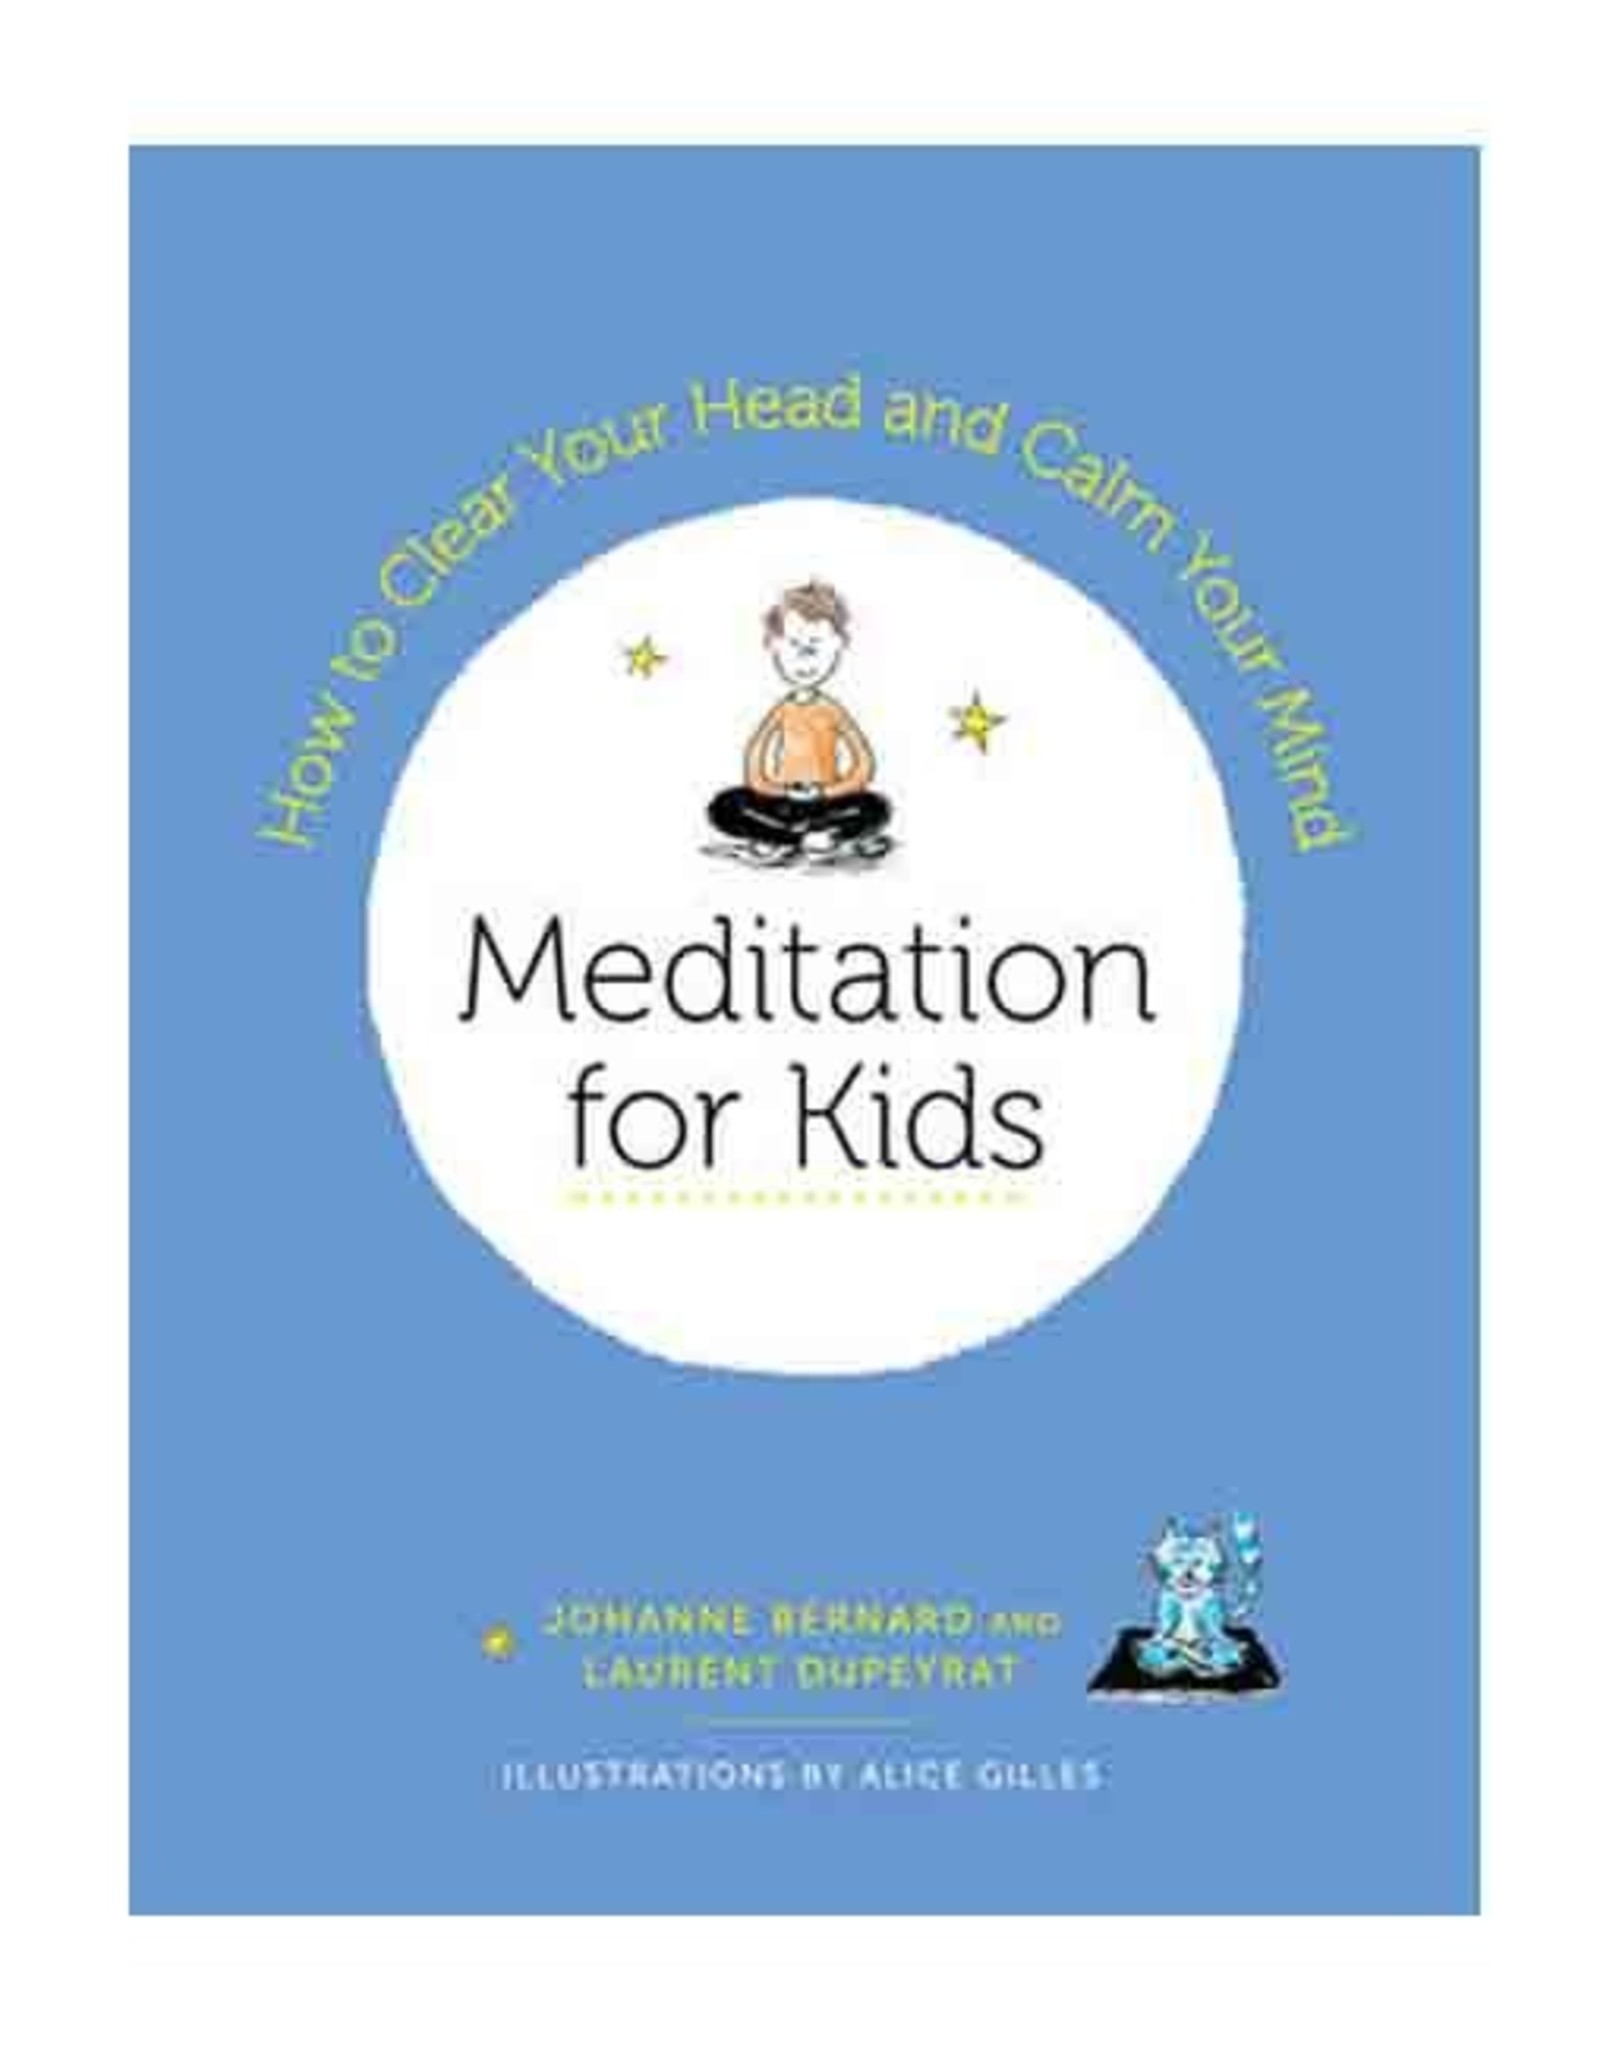 Meditation for Kids by Johanne Bernard & Laurent Dupeyrat